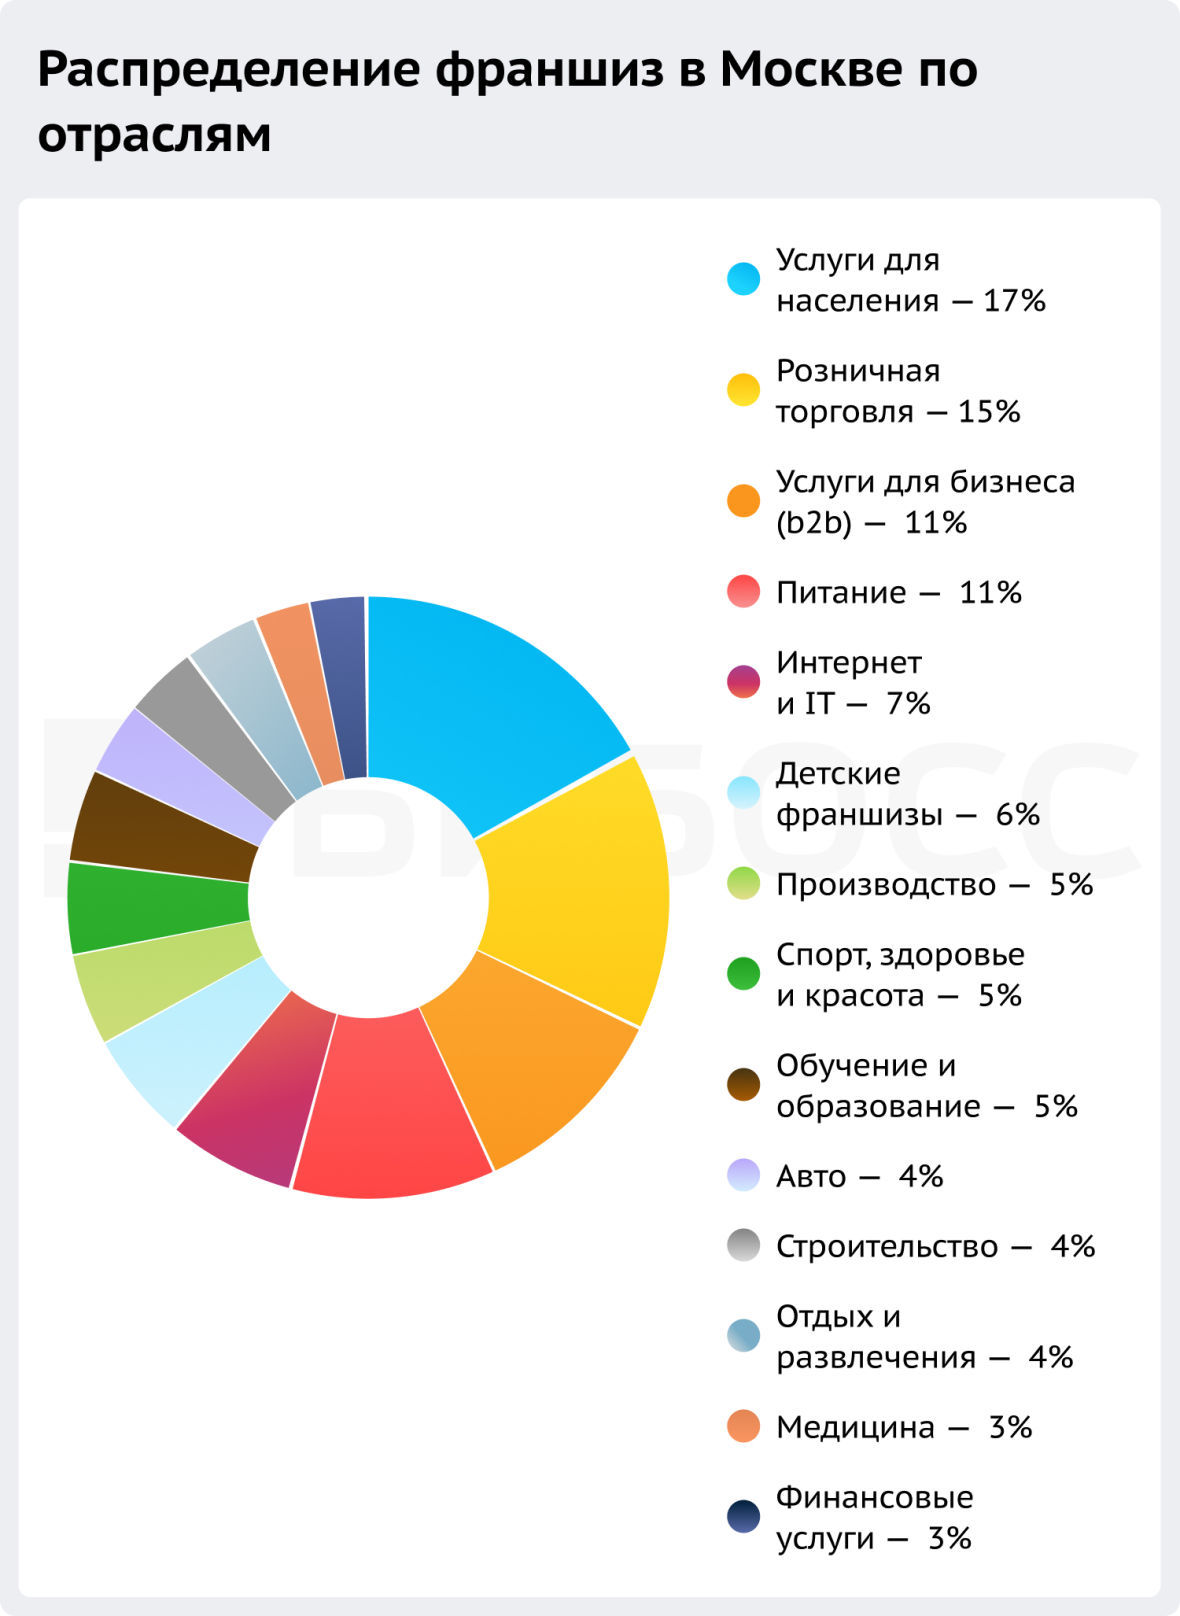 Статистика франшиз в Москве по отраслям